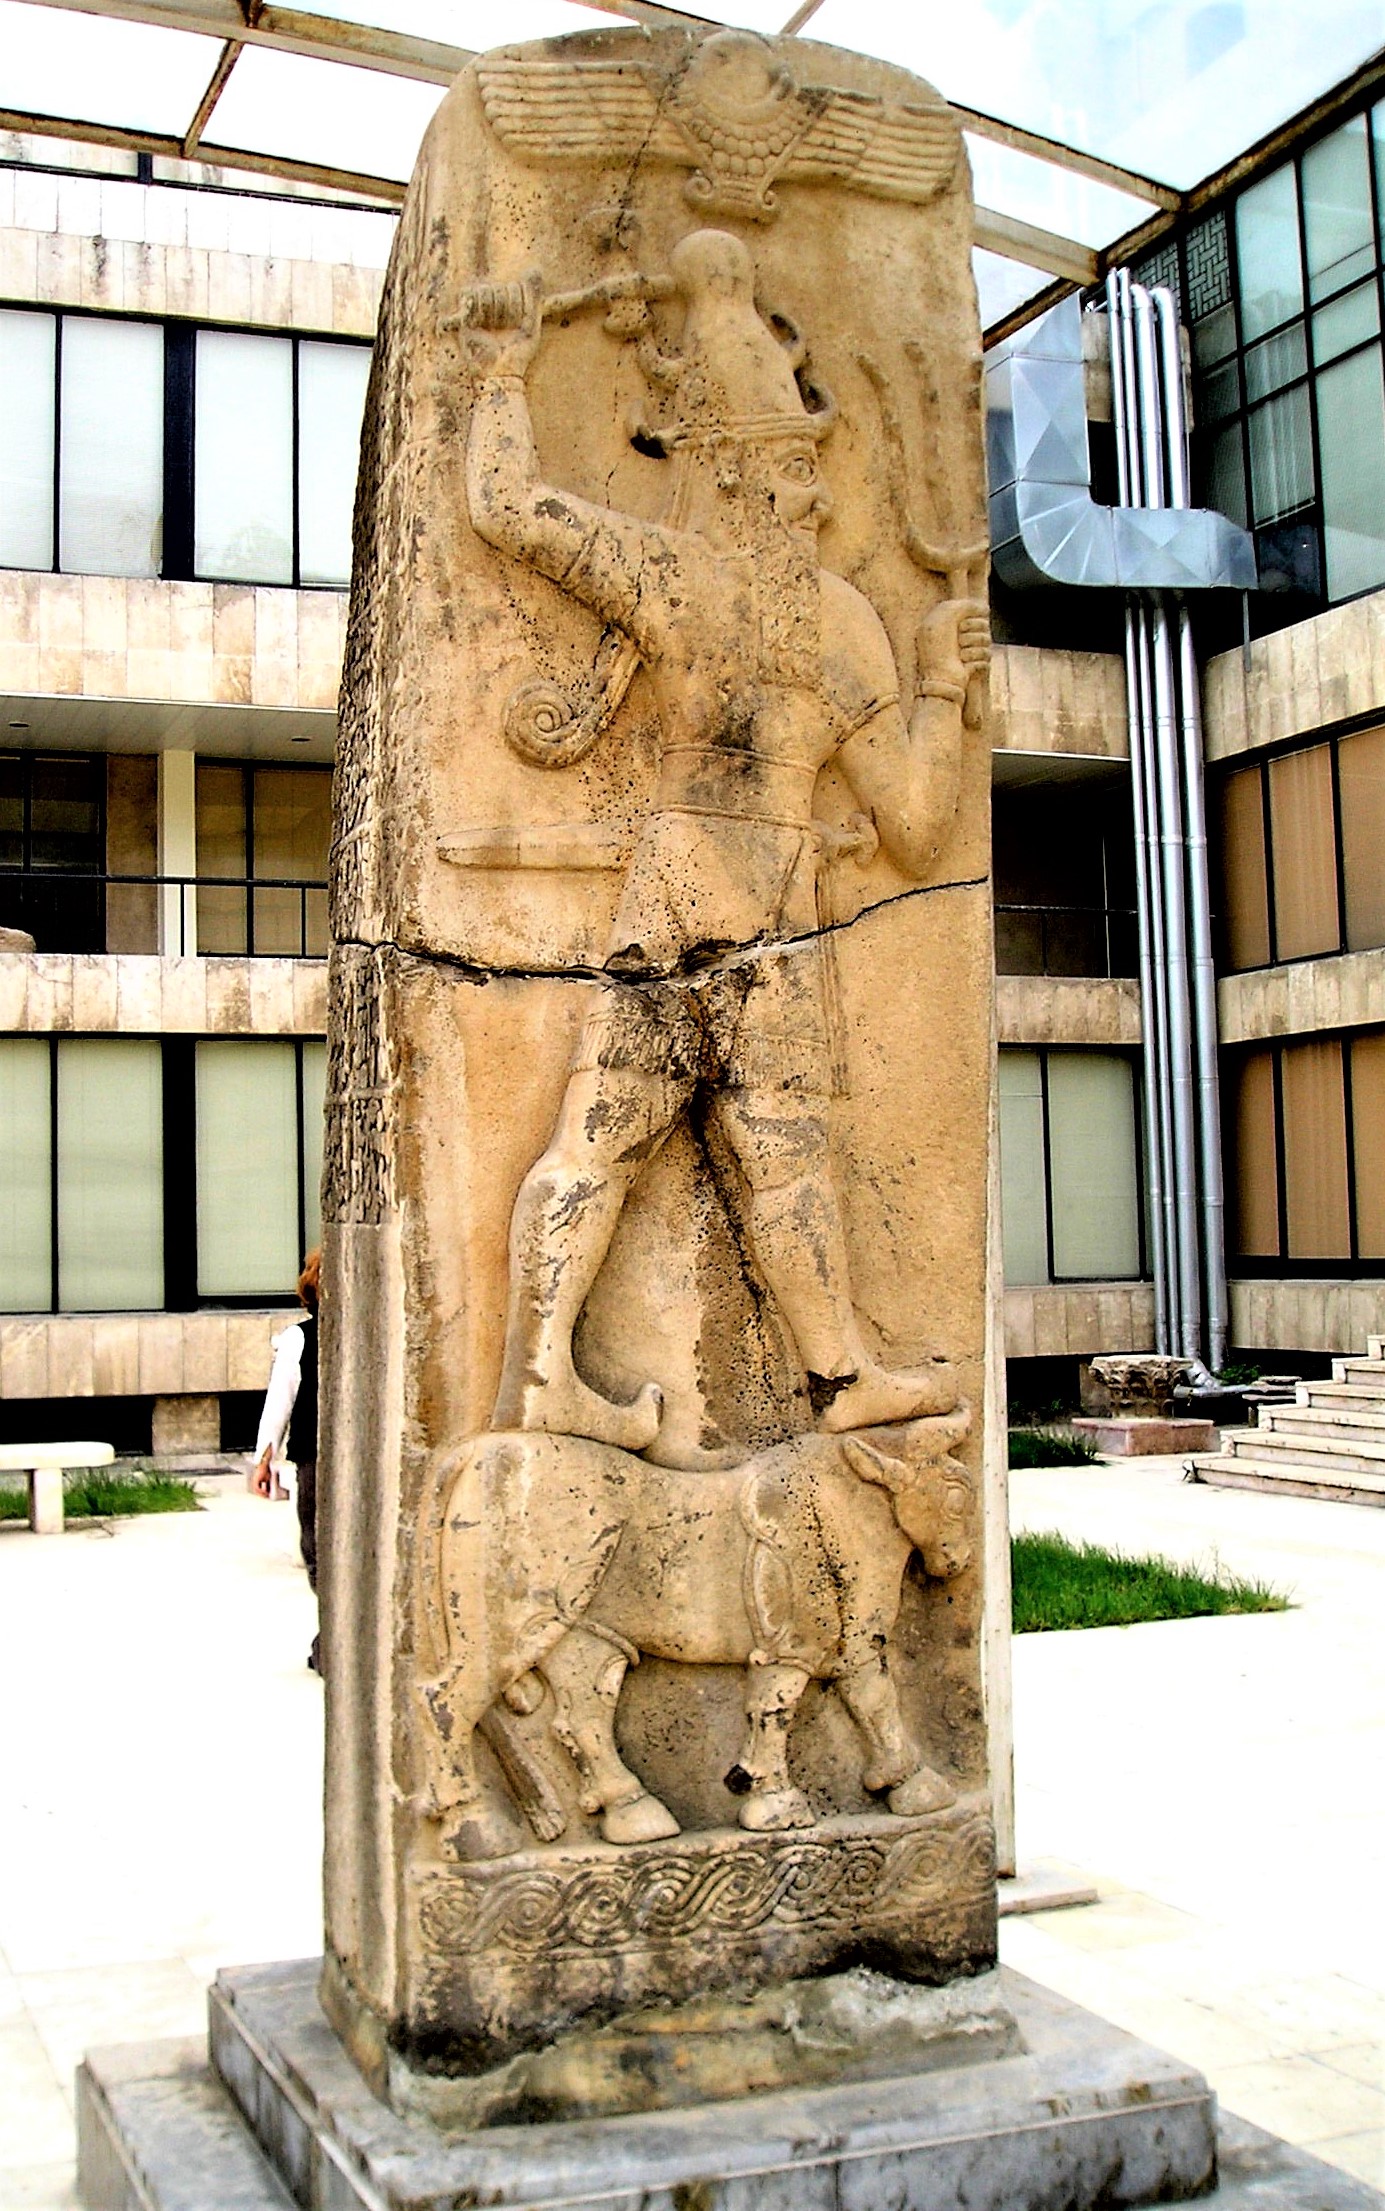 5 - Adad stele artifact in Aleppo, alien high-tech weapons in each hand